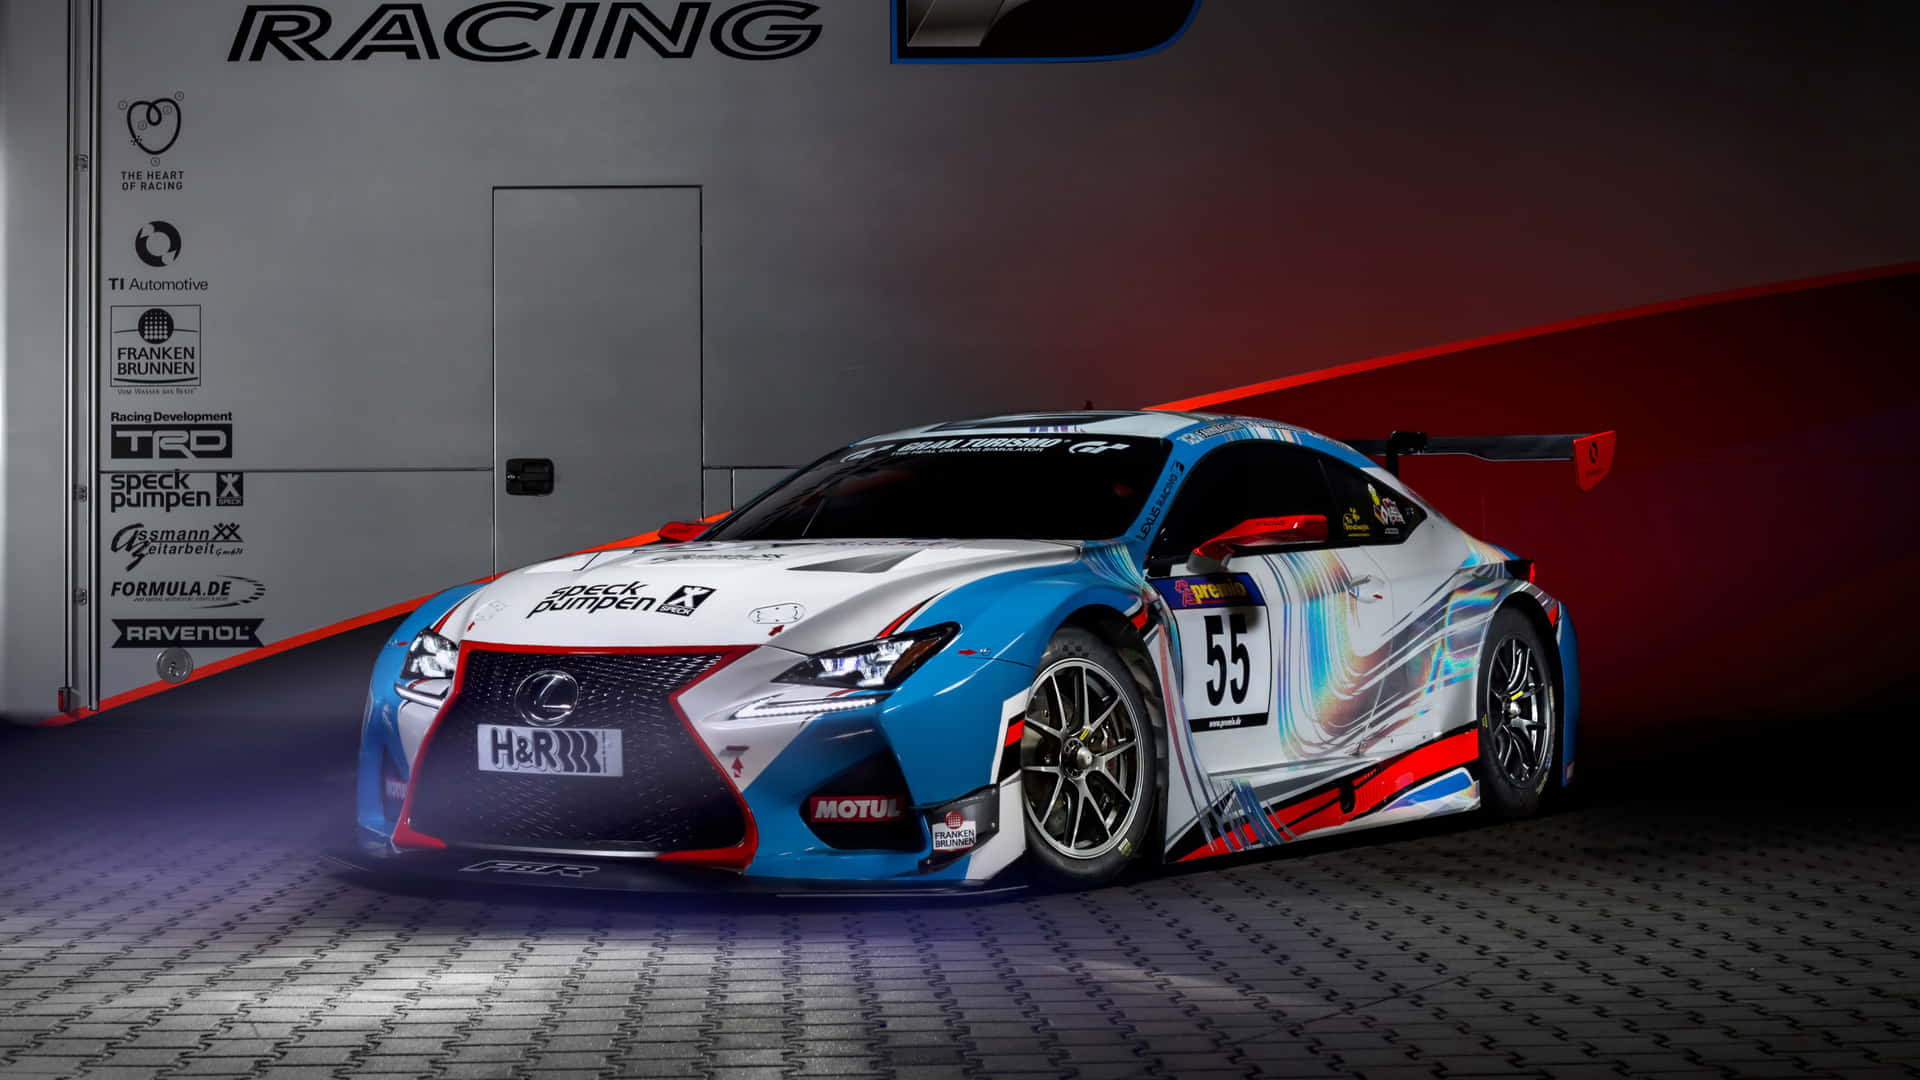 Lexus Rc Racing - Gt3 Gt3 Gt3 Gt3 Gt3 Gt Wallpaper